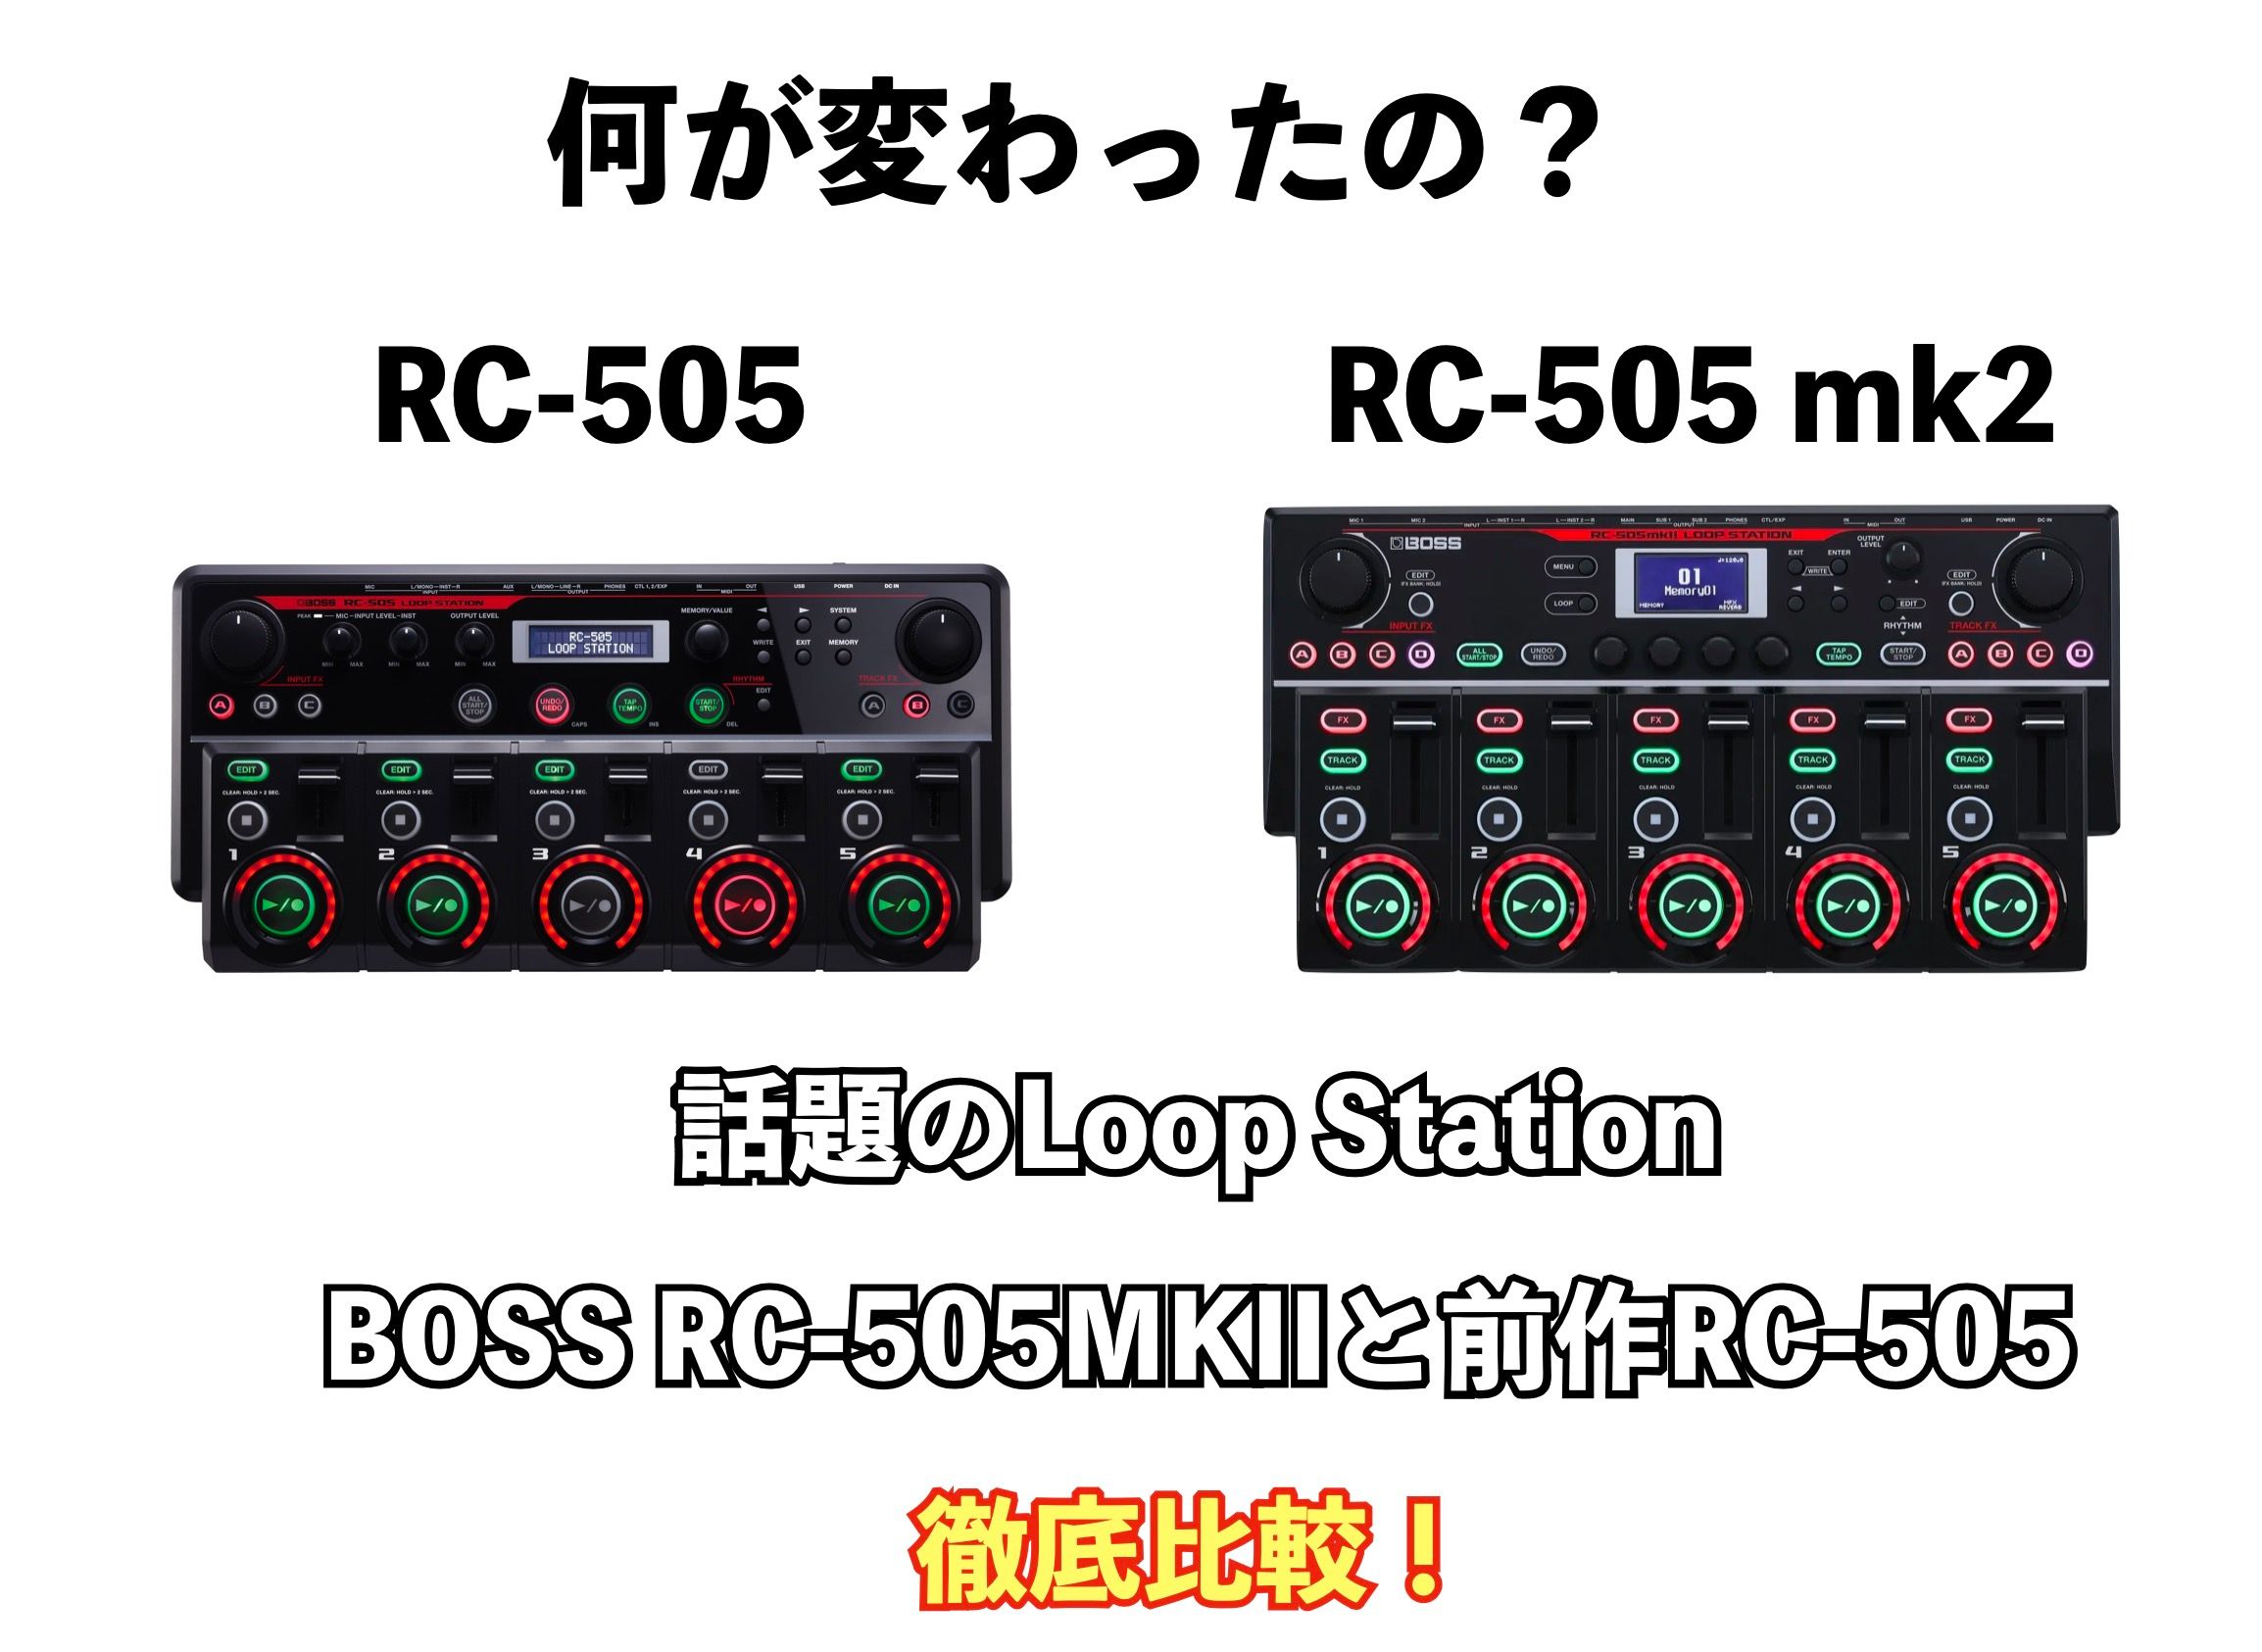 rc-505 mk2